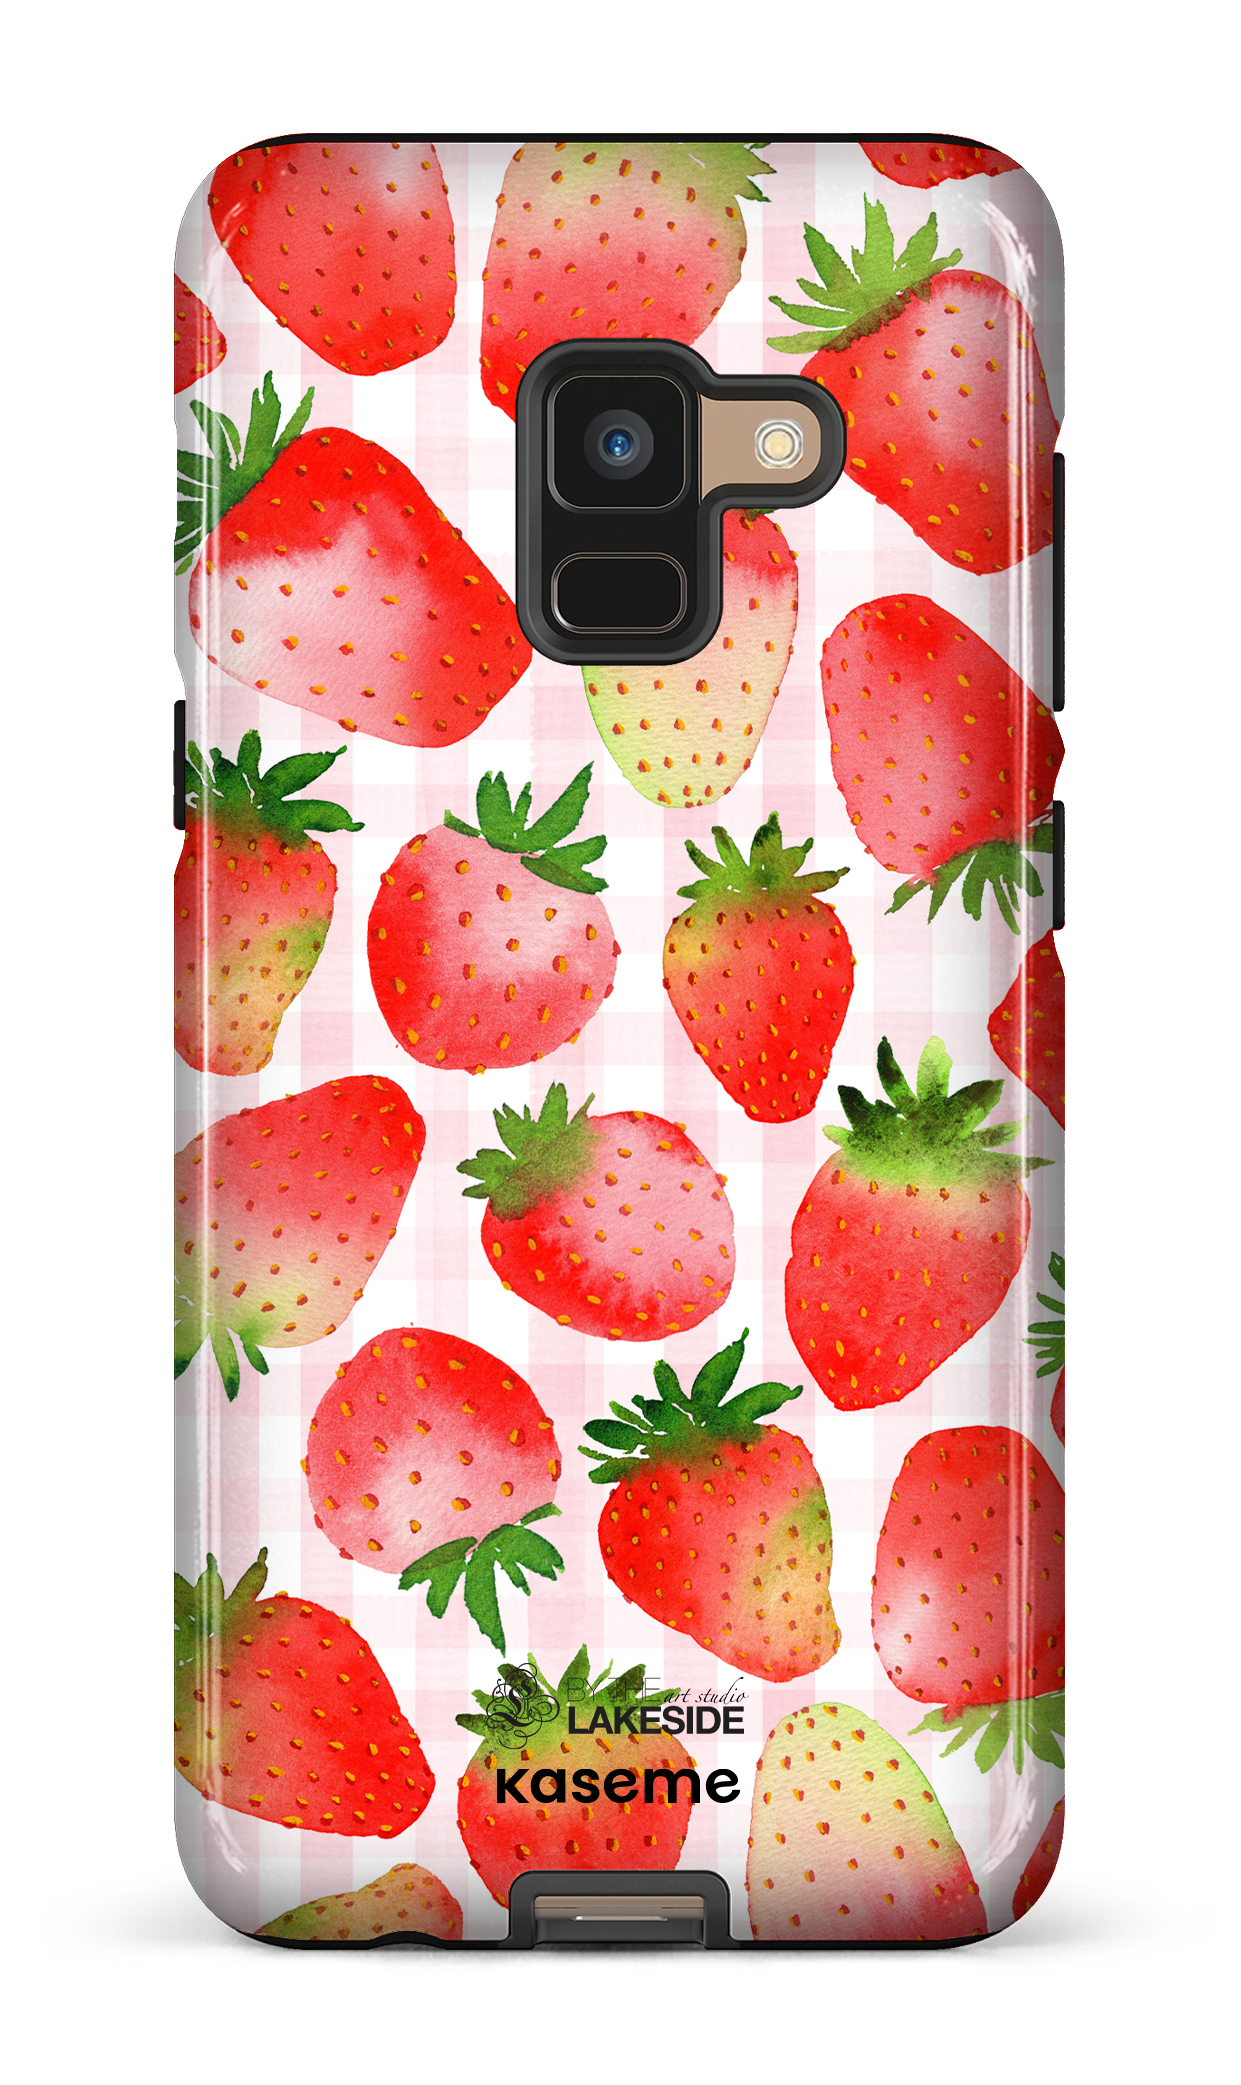 Strawberry Fields by Pooja Umrani - Galaxy A8